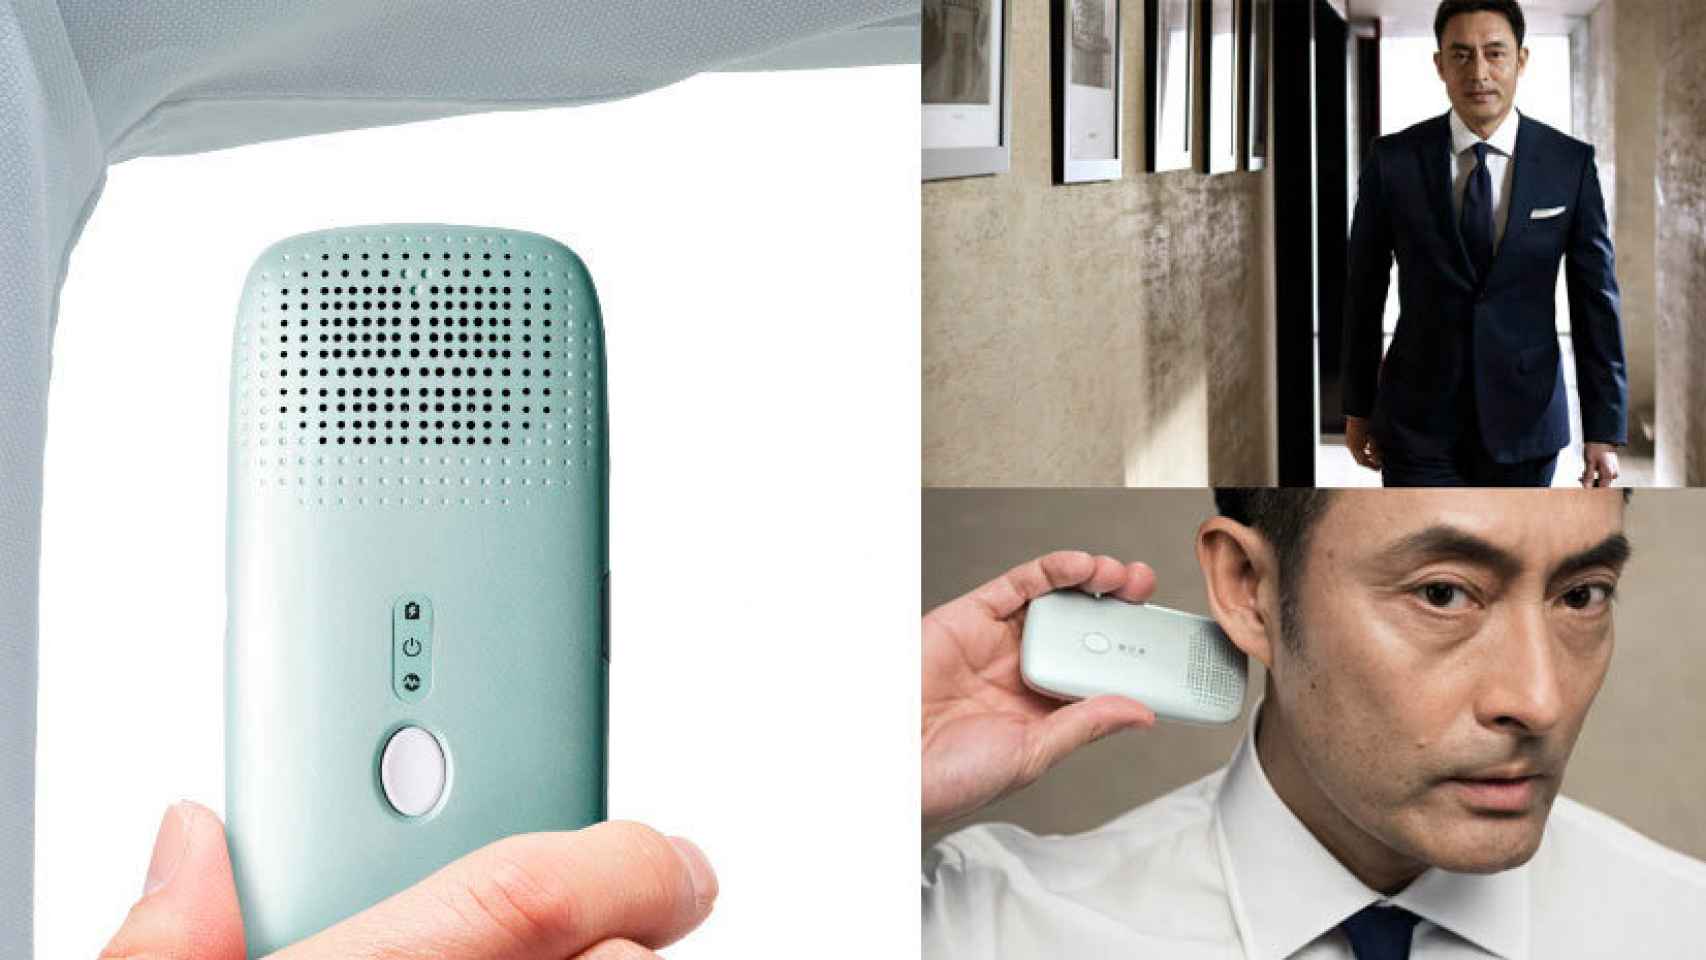 El accesorio que detecta olores existe: descubre si te hace falta una ducha